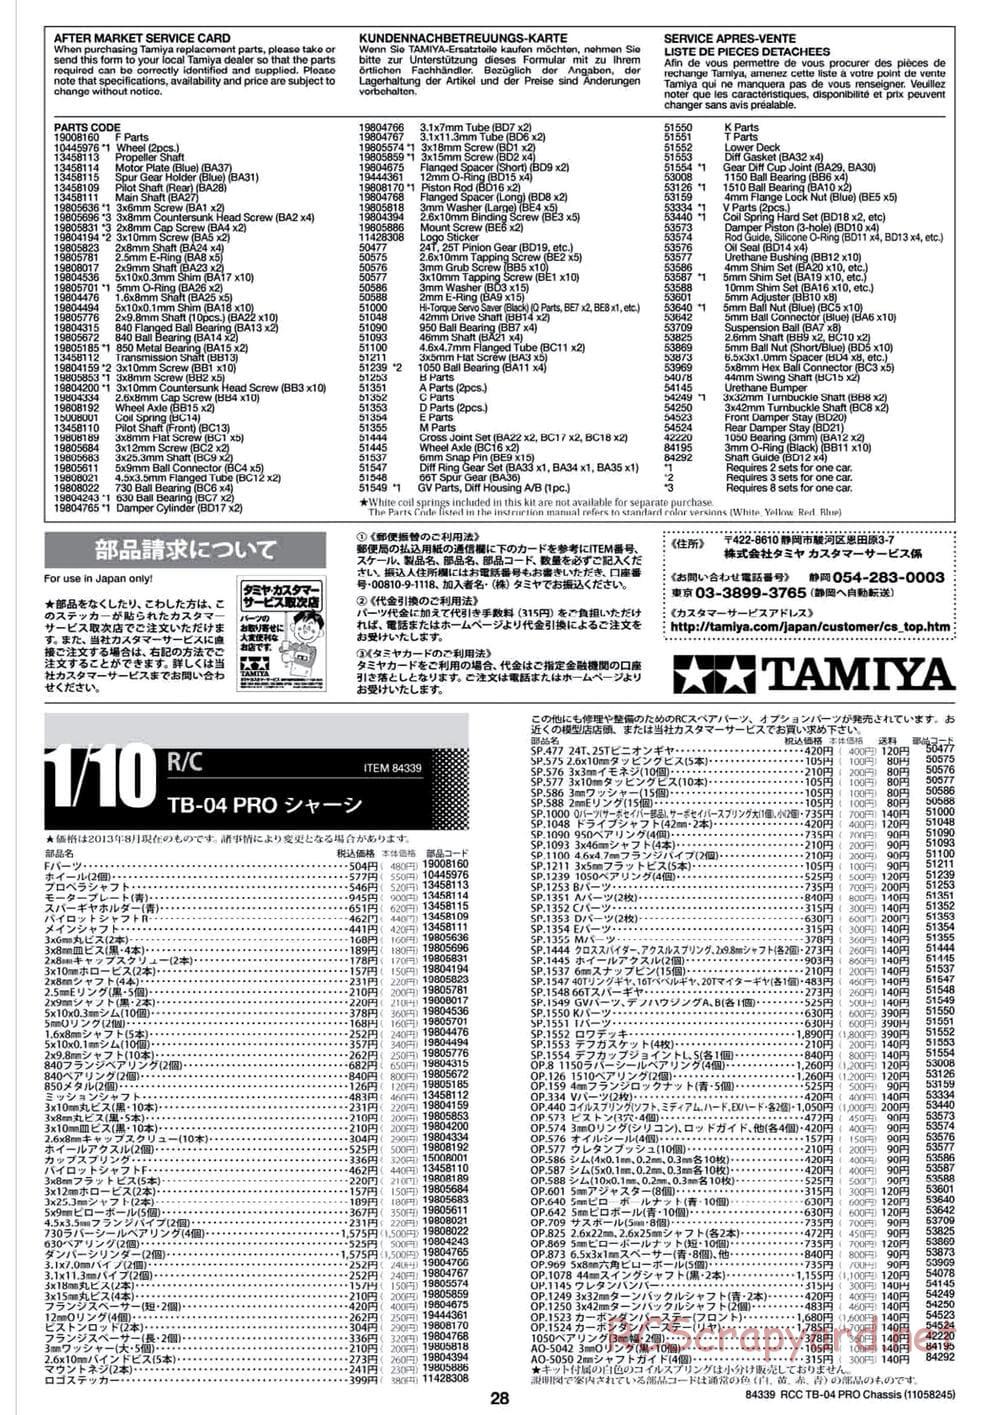 Tamiya - TB-04 Pro Chassis - Manual - Page 28